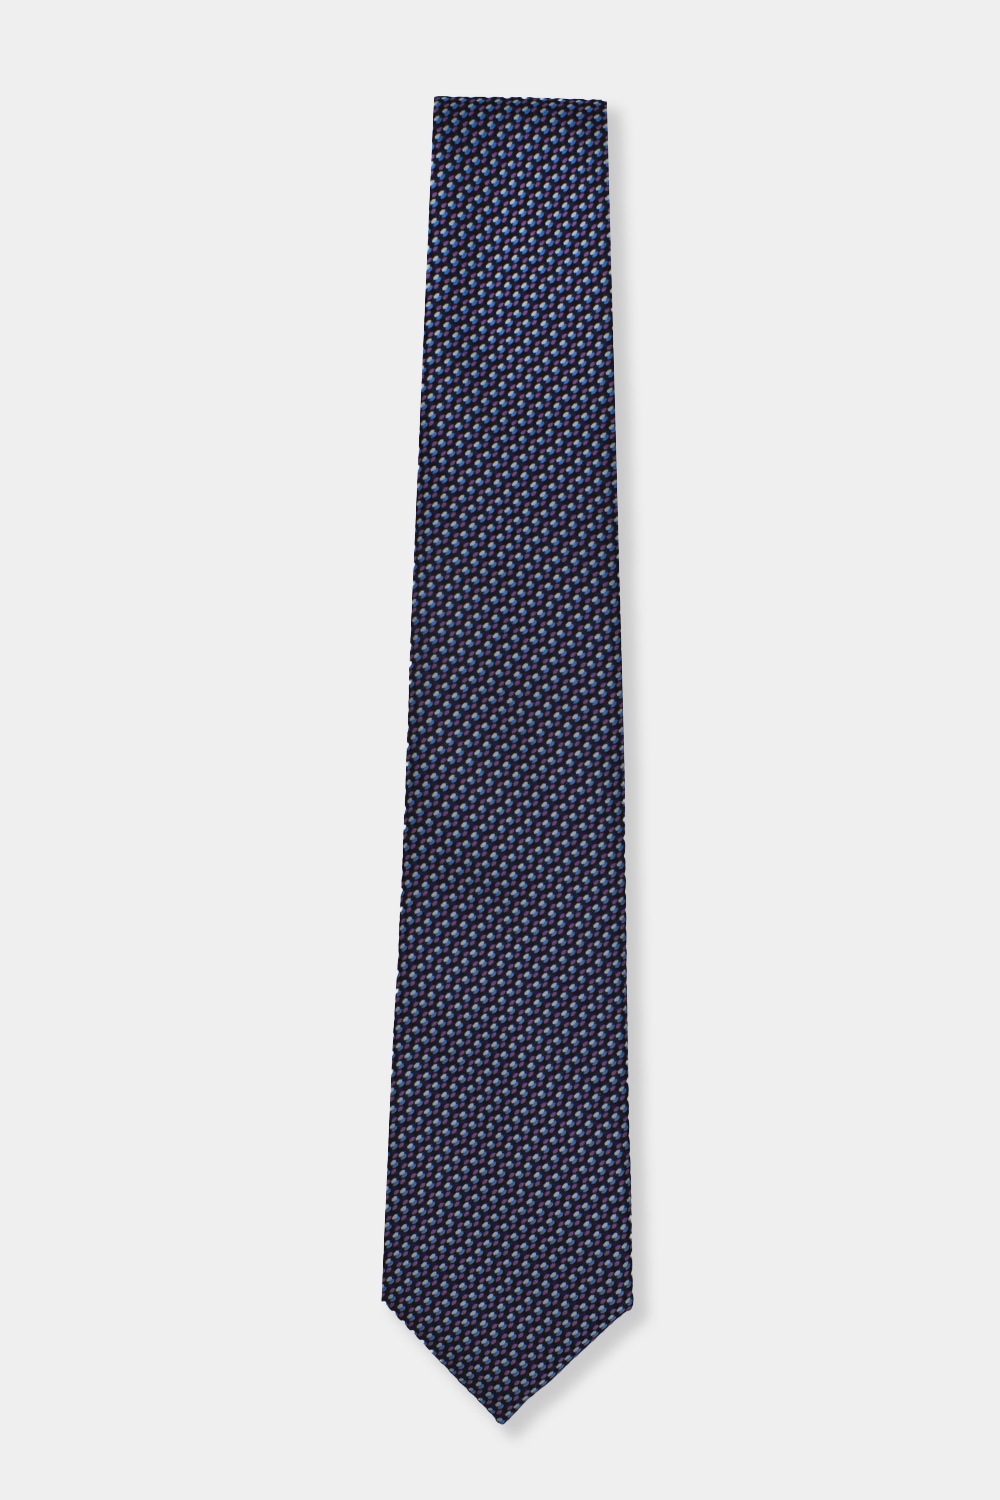 Jacquard Tie 7.5 cm Purple - TIE HOUSE